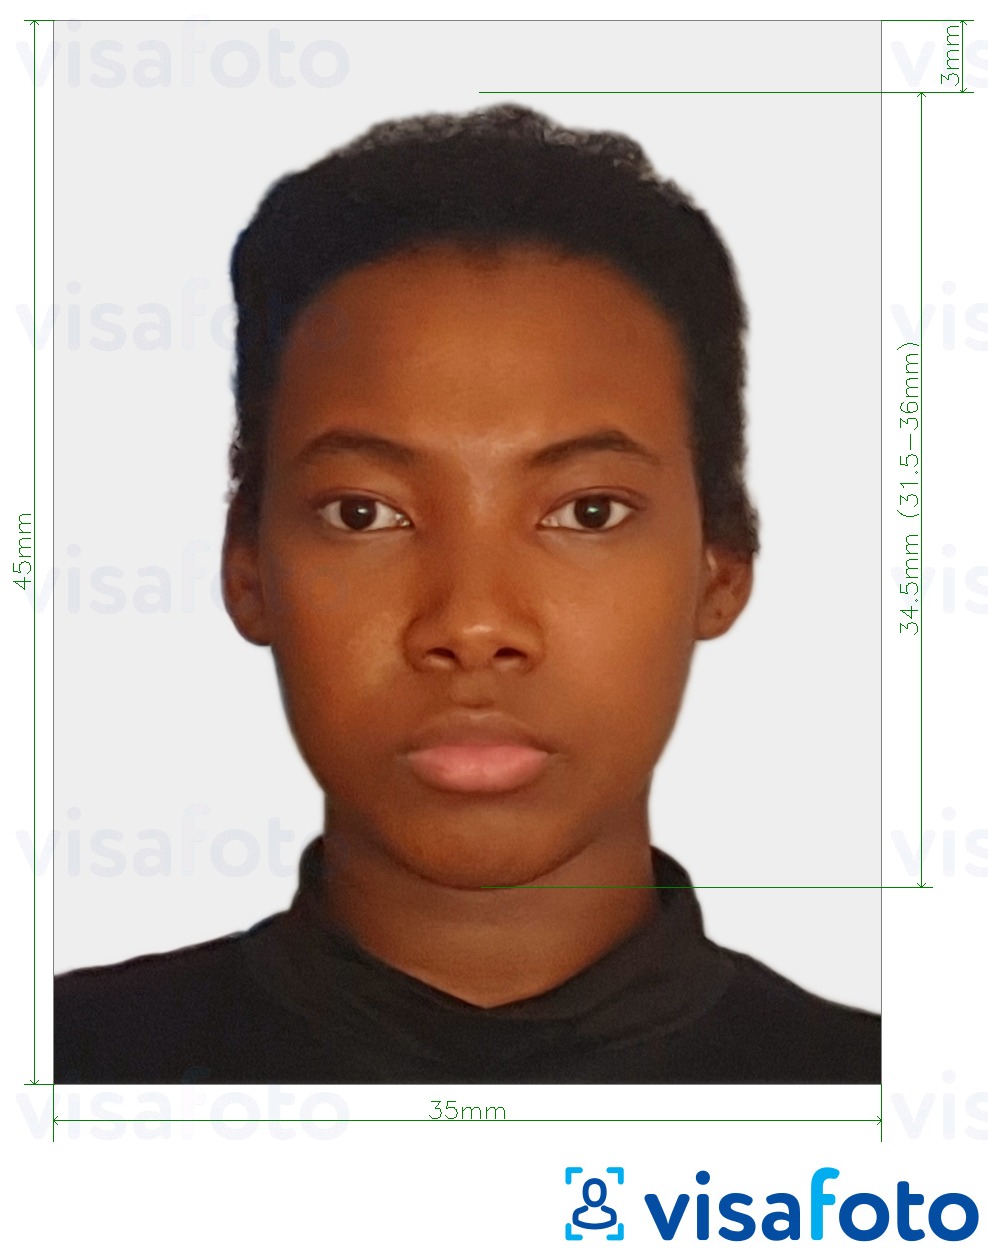 Primjer fotografije za Južna Afrika Visa 35x45 mm (3,5x4,5 cm) s točno određenom veličinom